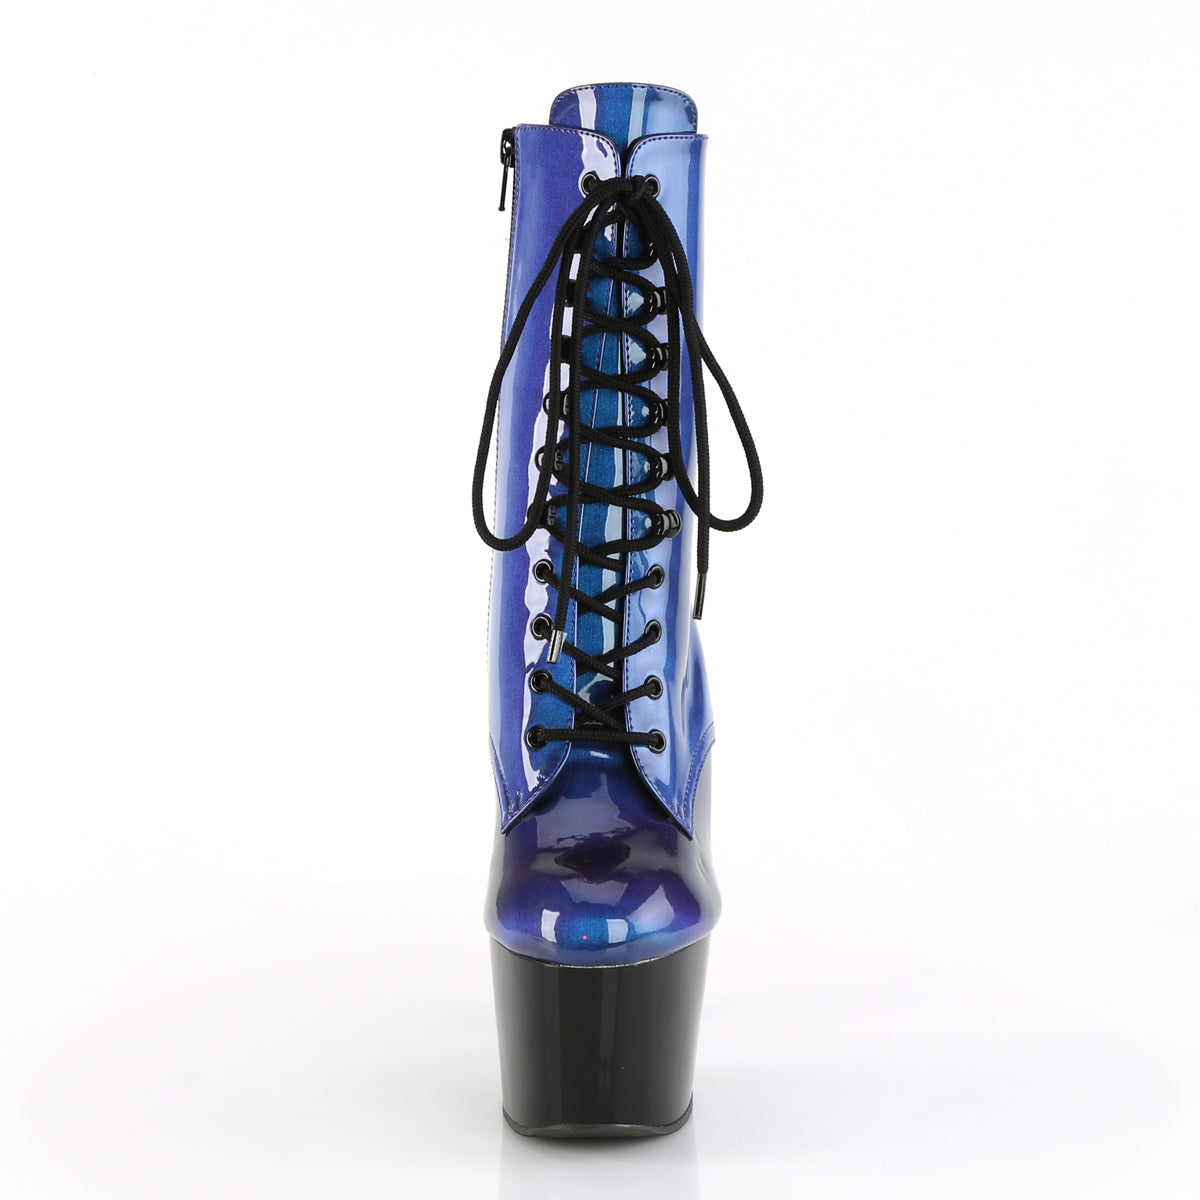 Pleaser Botas de tobillo para mujer ADORE-1020shg azul-púrpura / blk